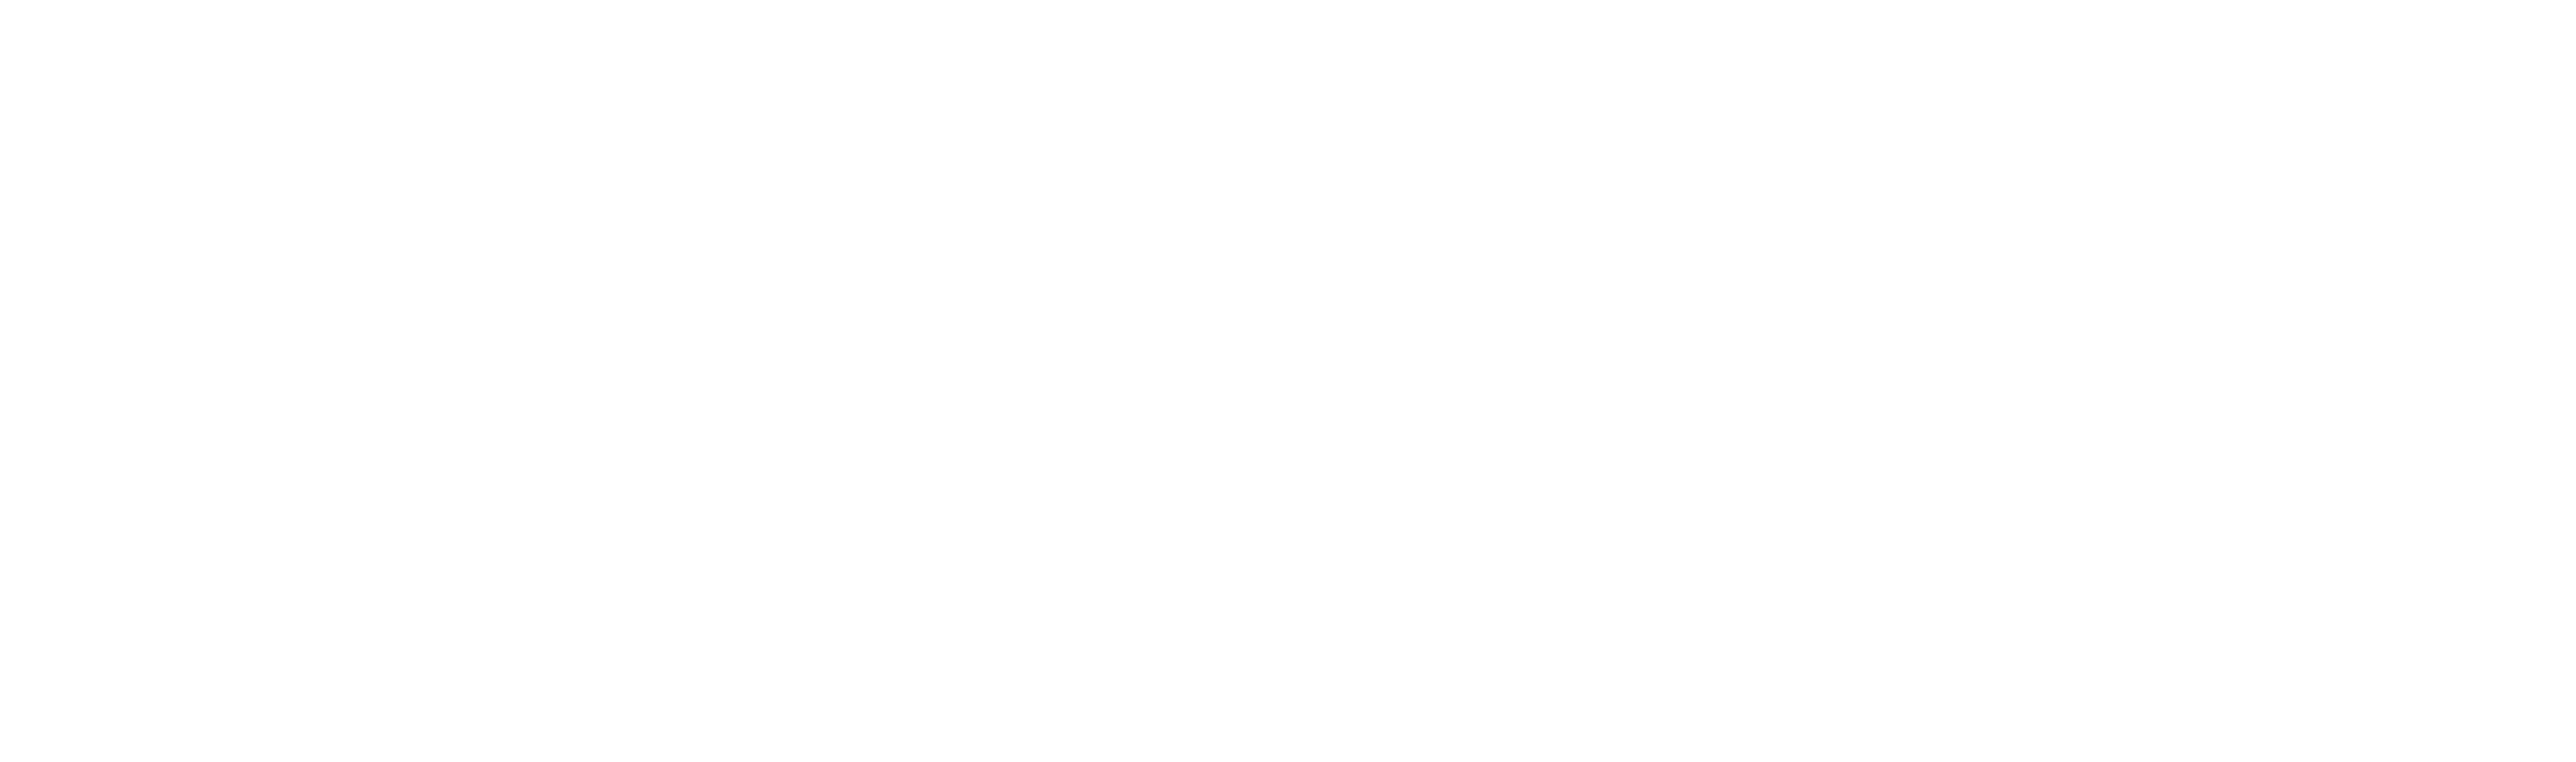 Marinas Feinkost Am Viktualienmarkt München Logo